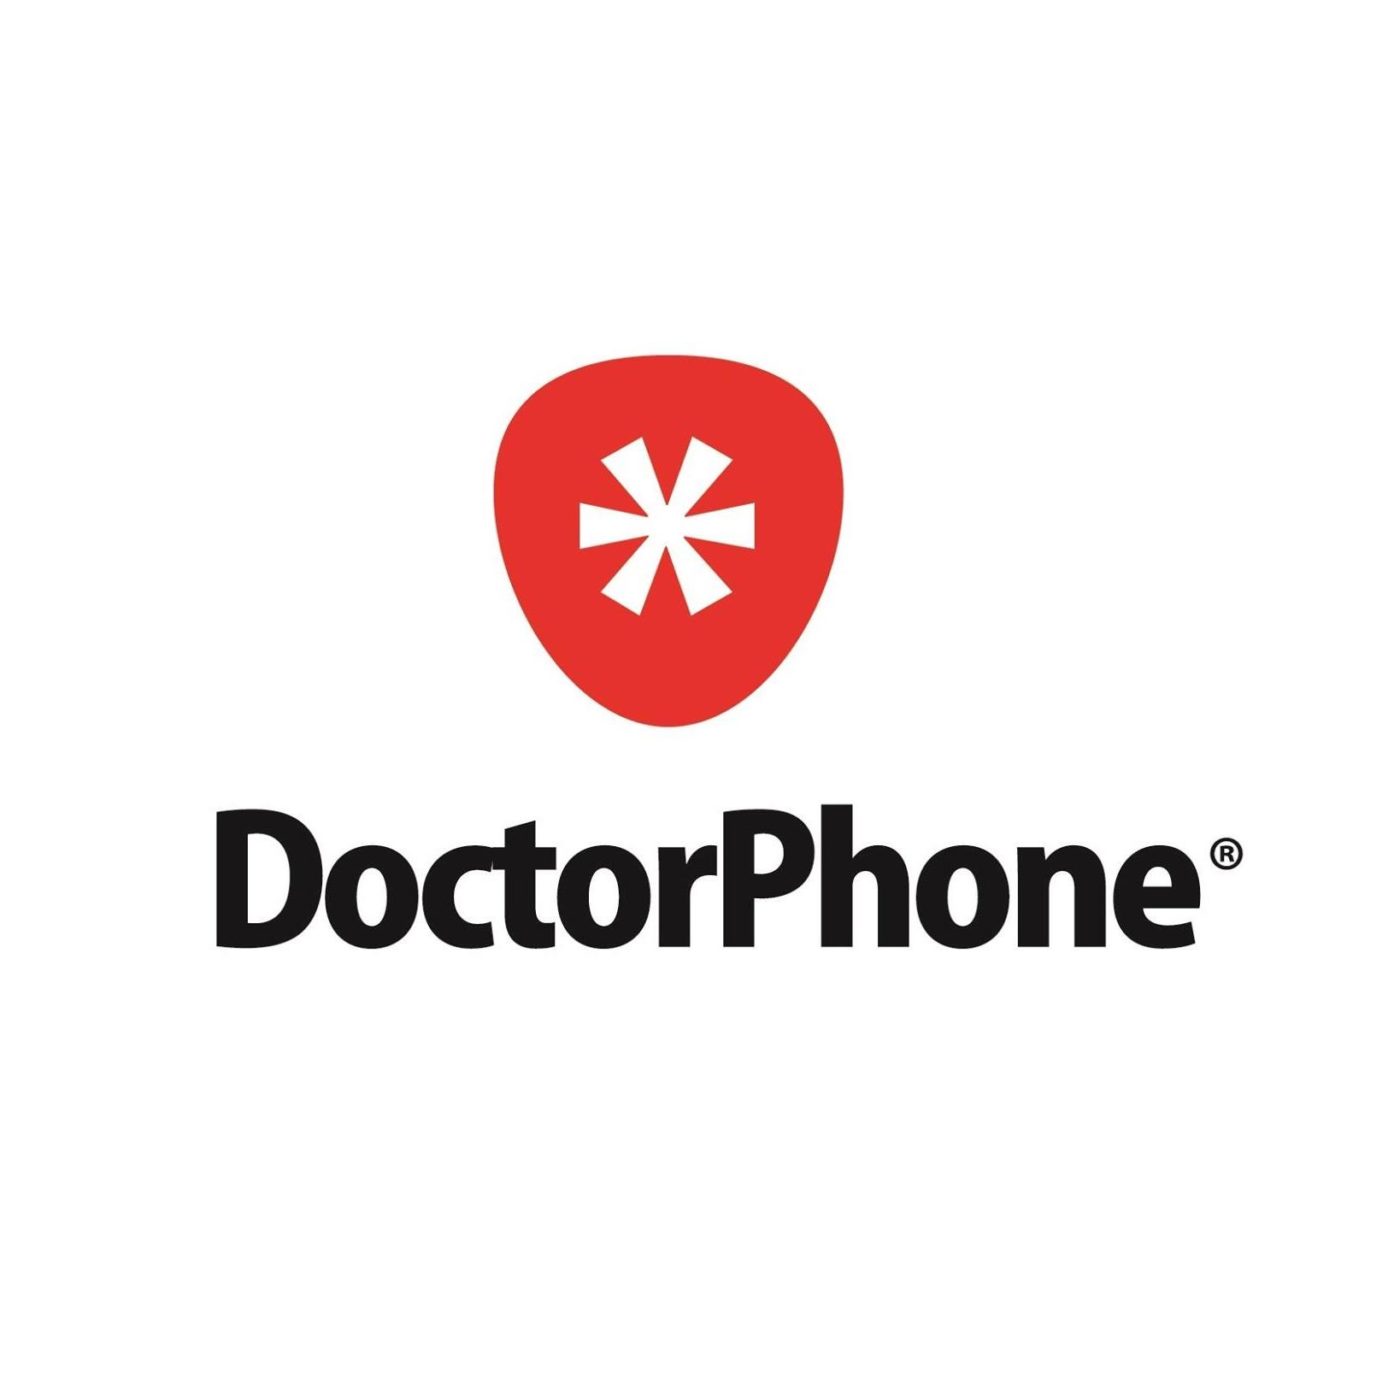 DoctorPhone